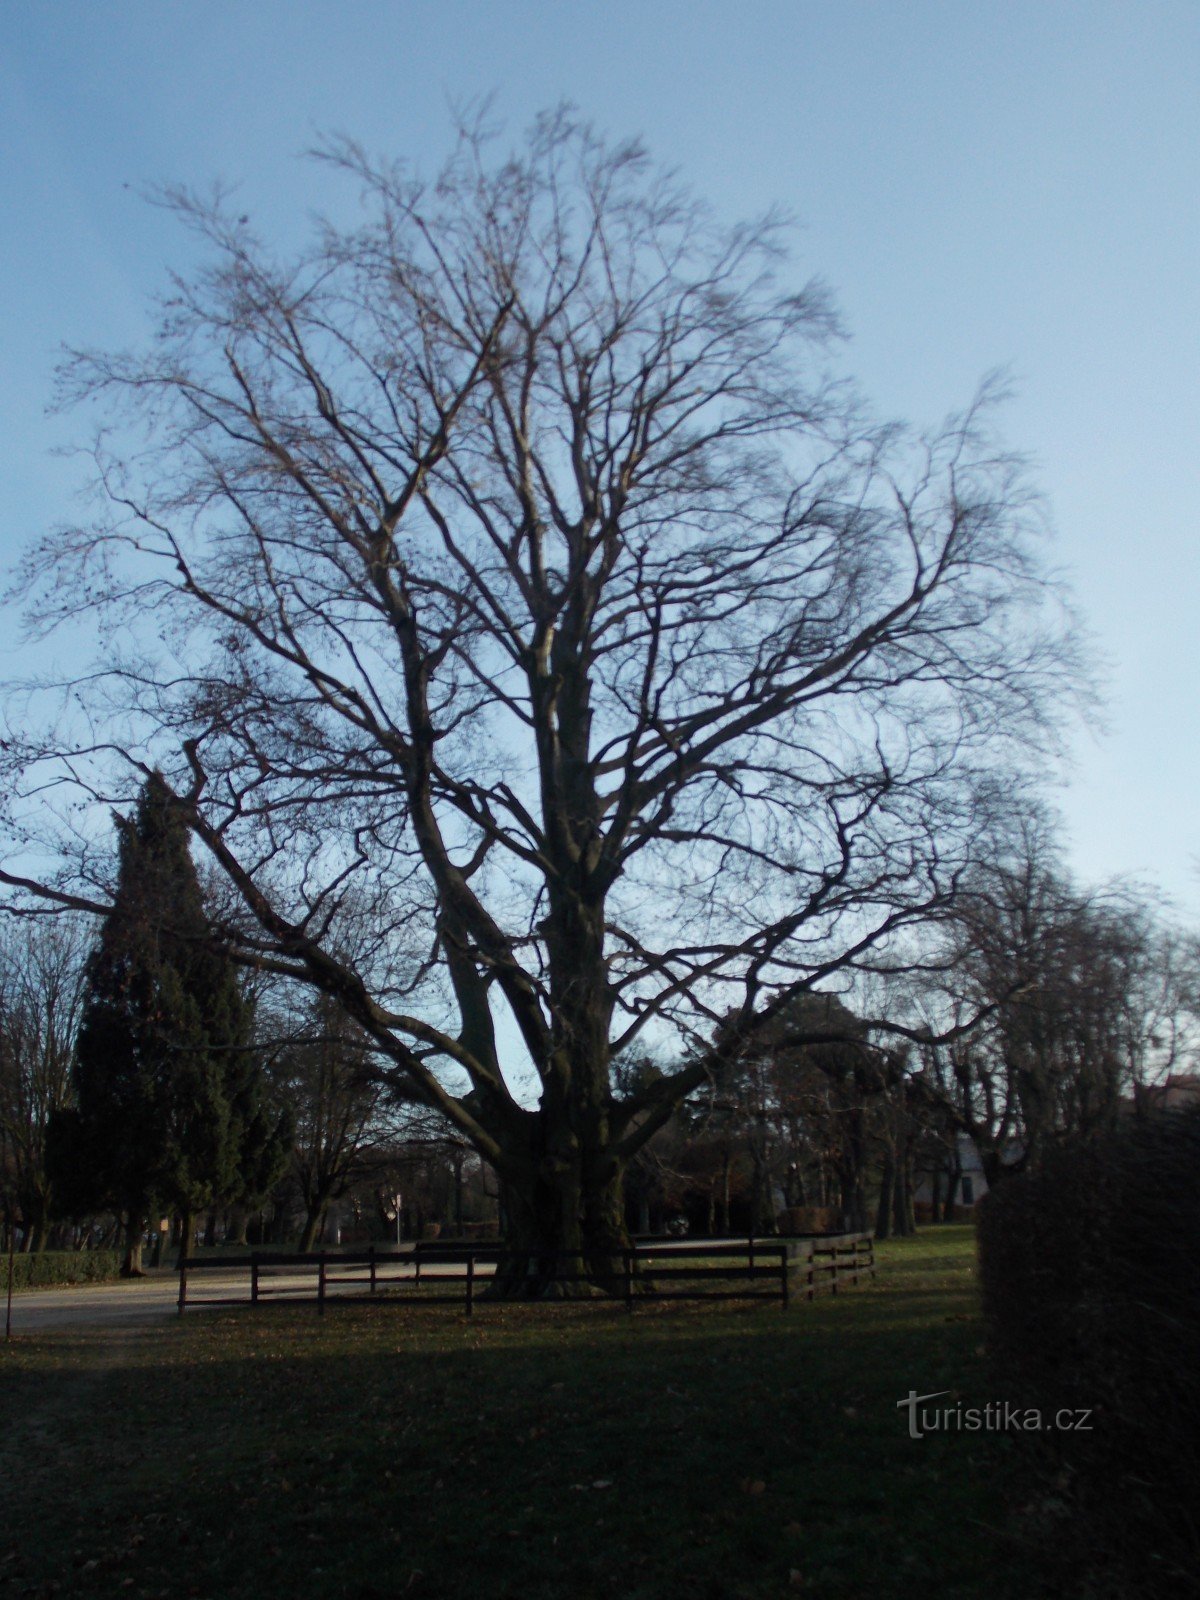 Памятное дерево перед замком в Голешове